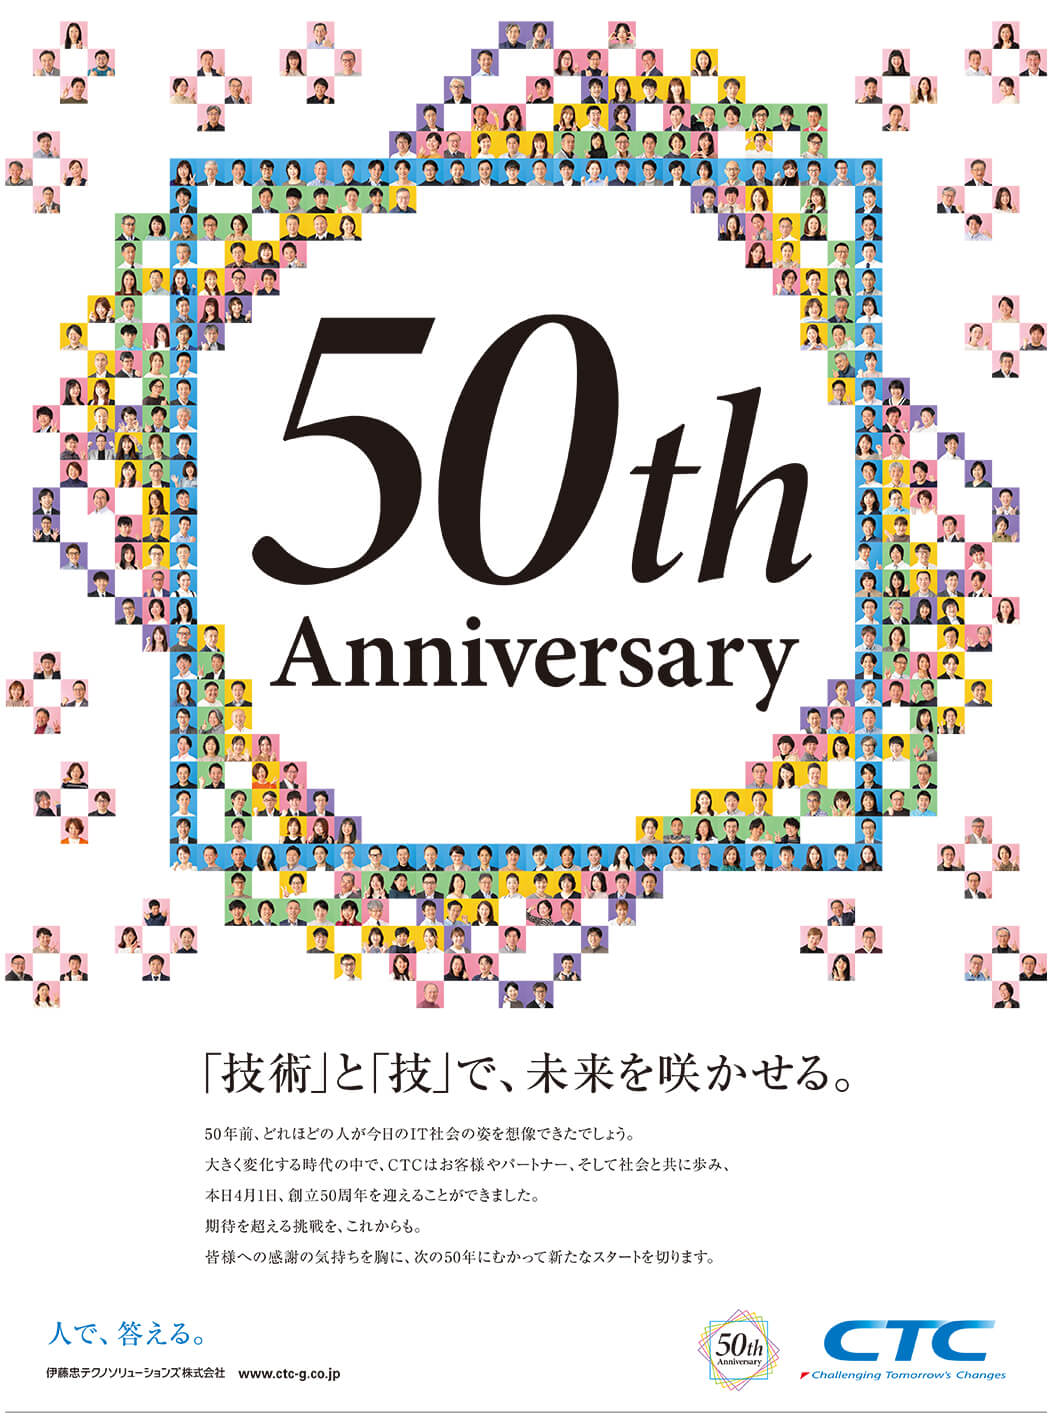 「50th Anniversary」デザインの画像